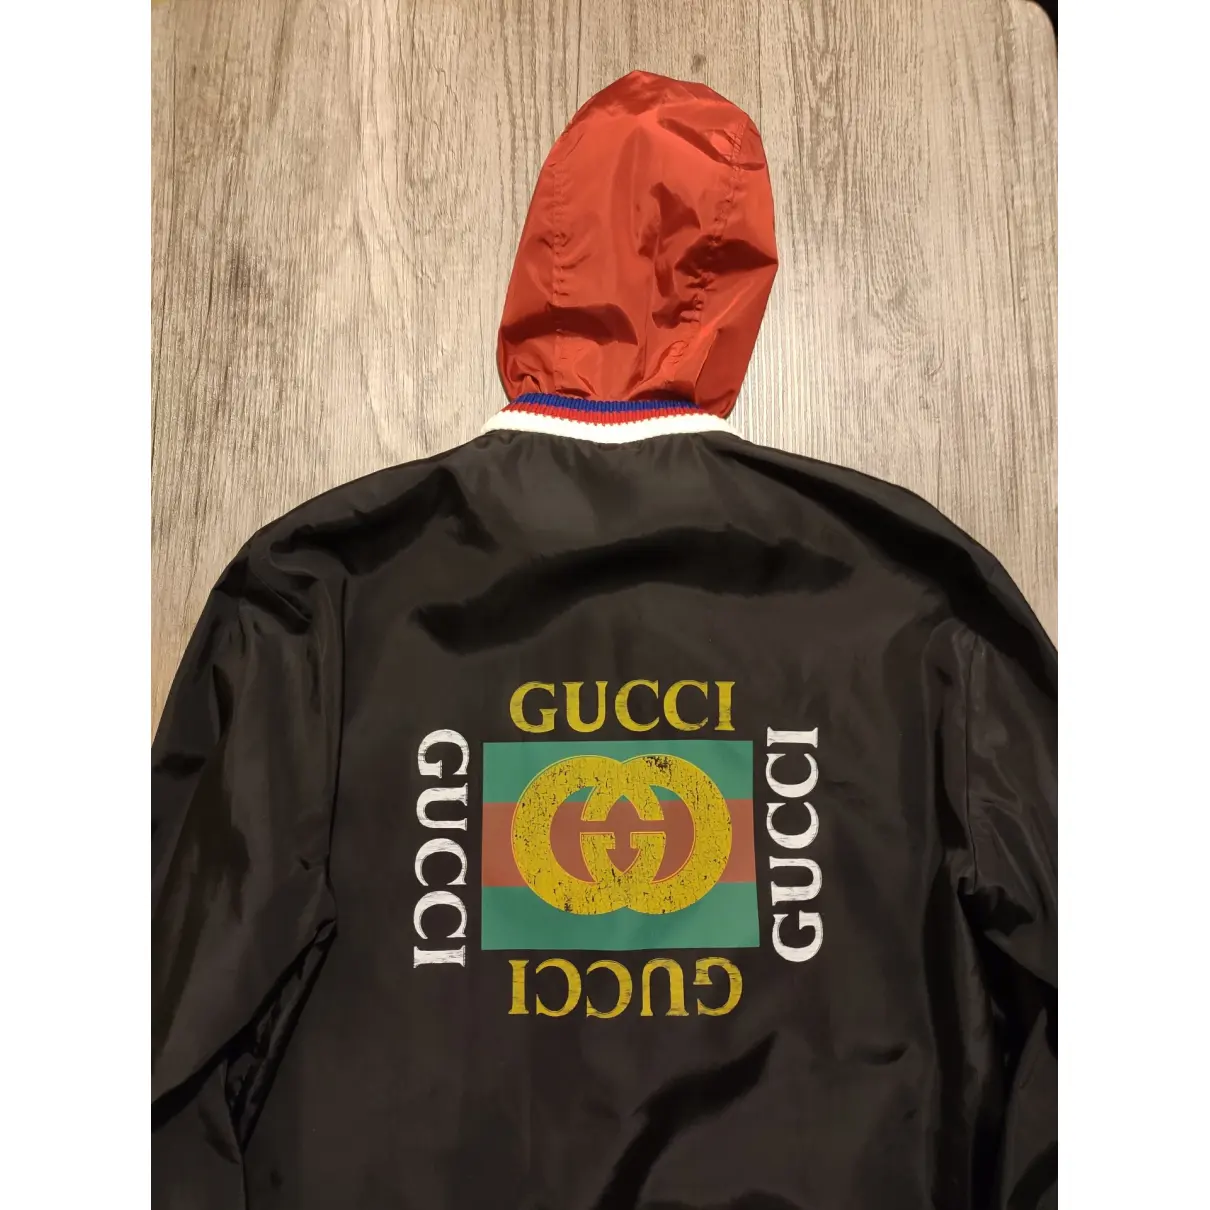 Buy Gucci Coat online